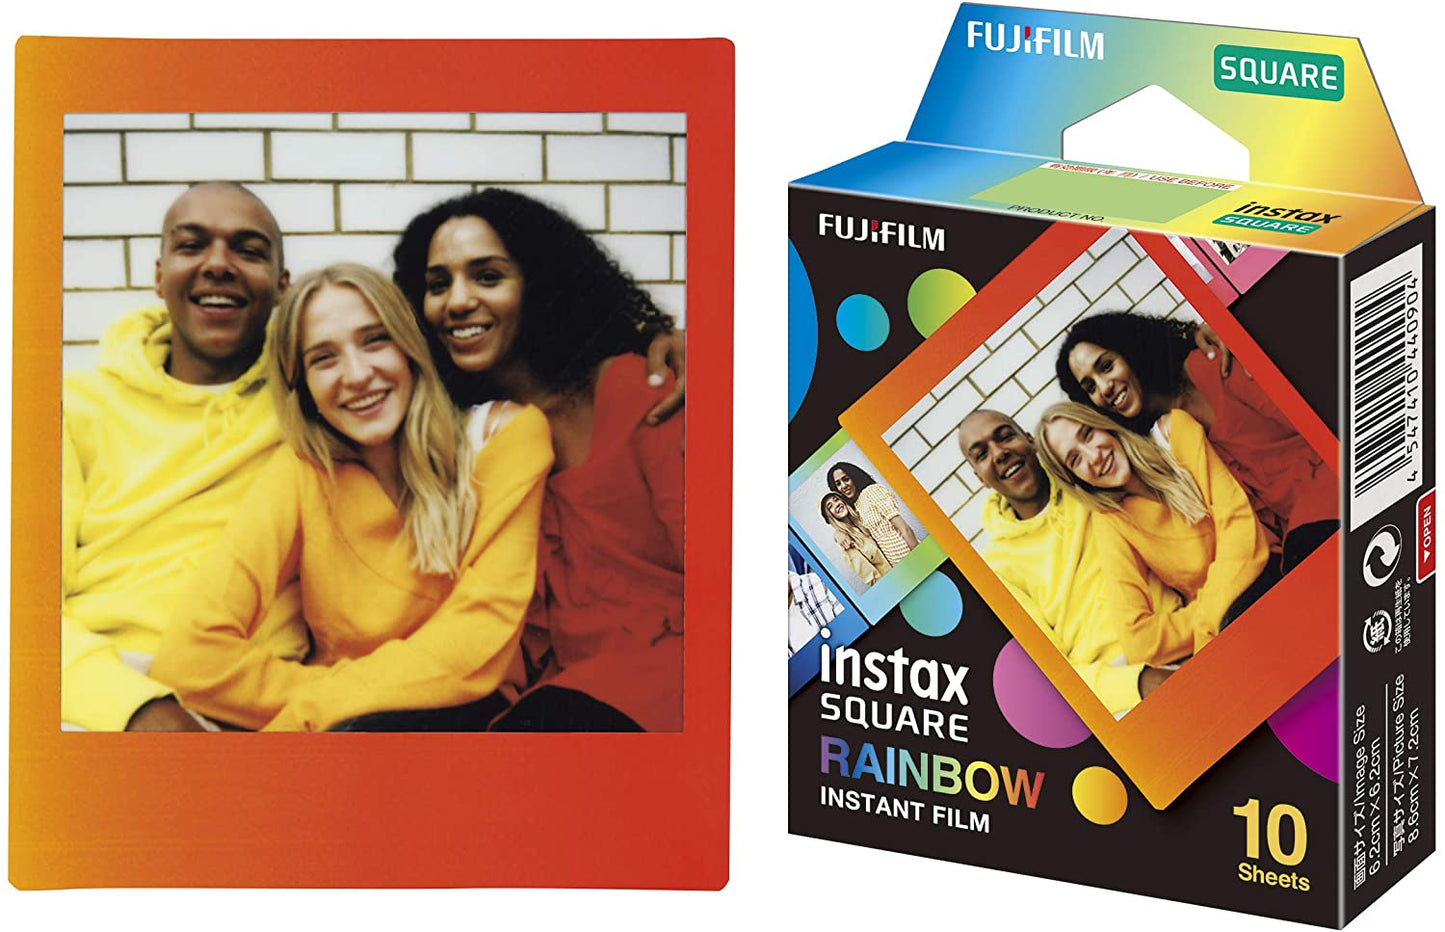 Fujifilm Instax Square Rainbow Frame 10 Sheets Film for Fujifilm Instax Square Cameras